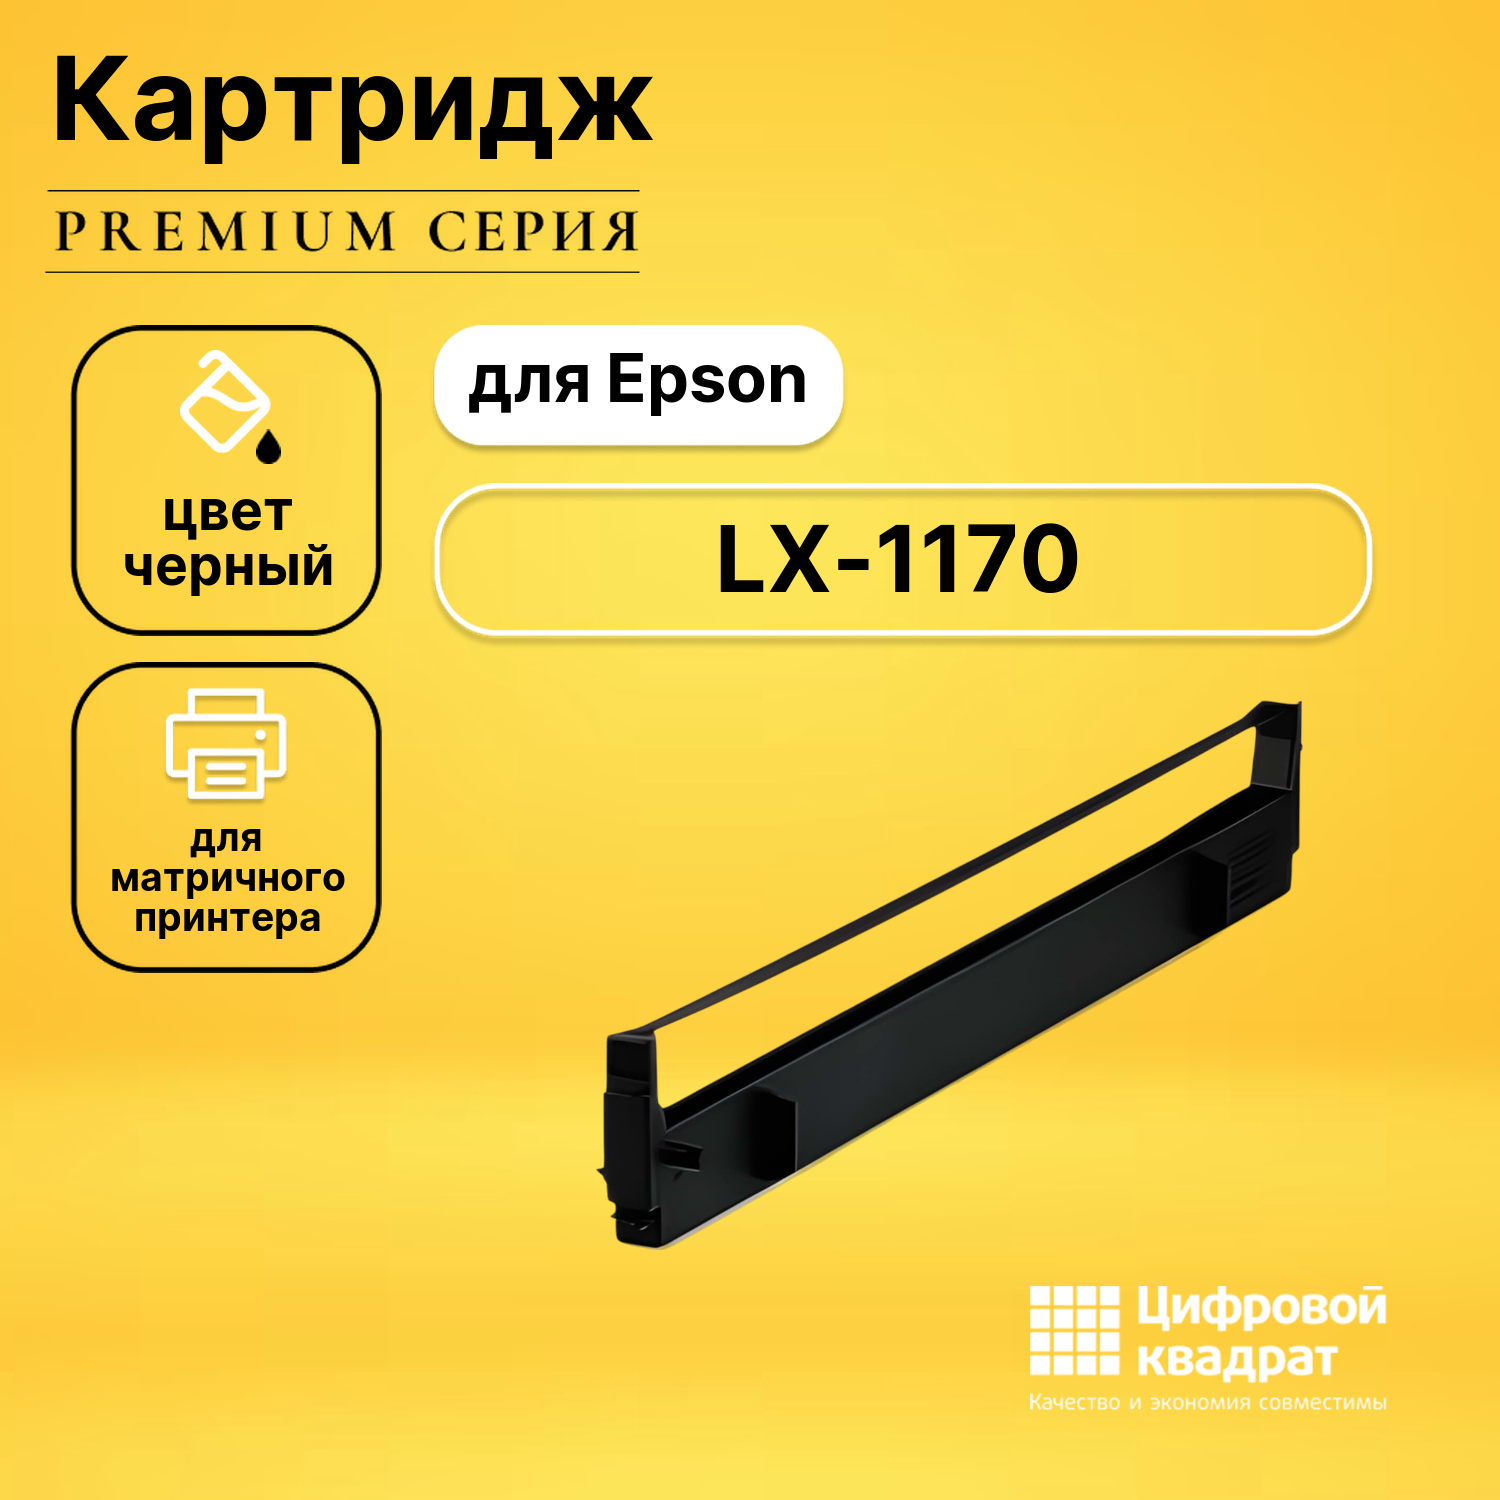 Риббон-картридж DS для Epson LX-1170 совместимый